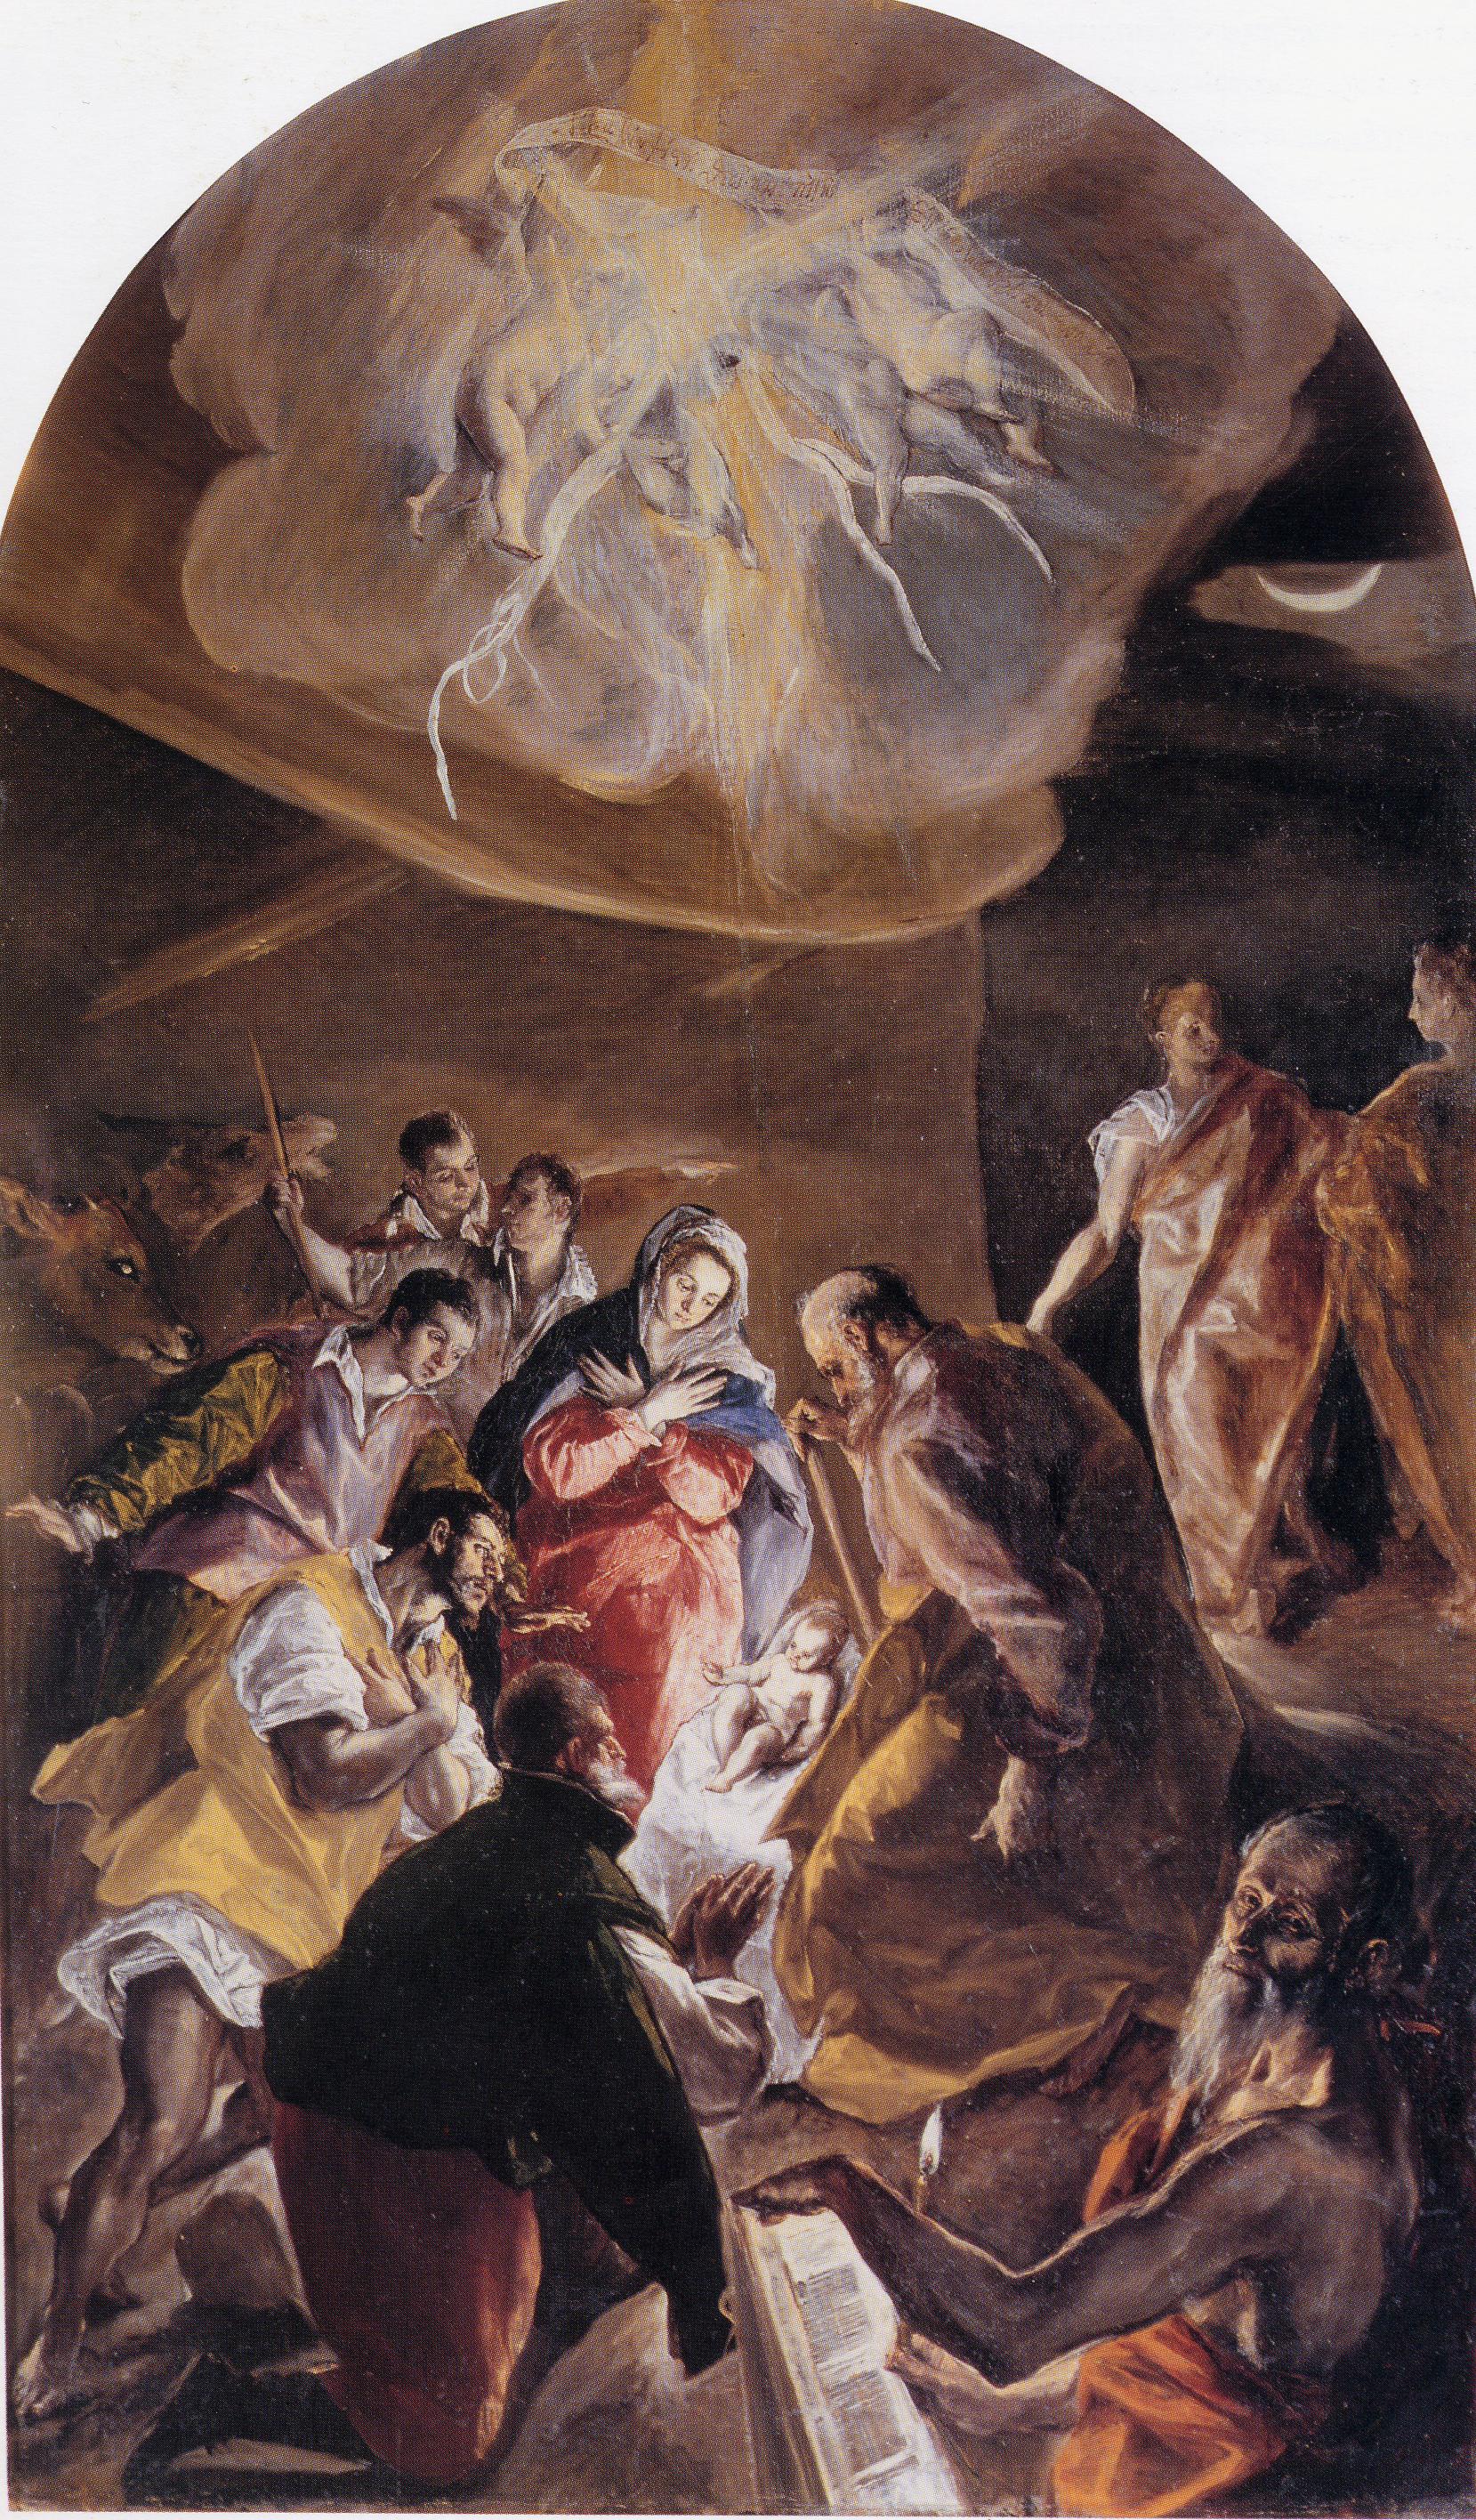 EL GRECO - La Adoración de los pastores.(1577-1579). Óleo sobre lienzo.  Madrid, colección particular